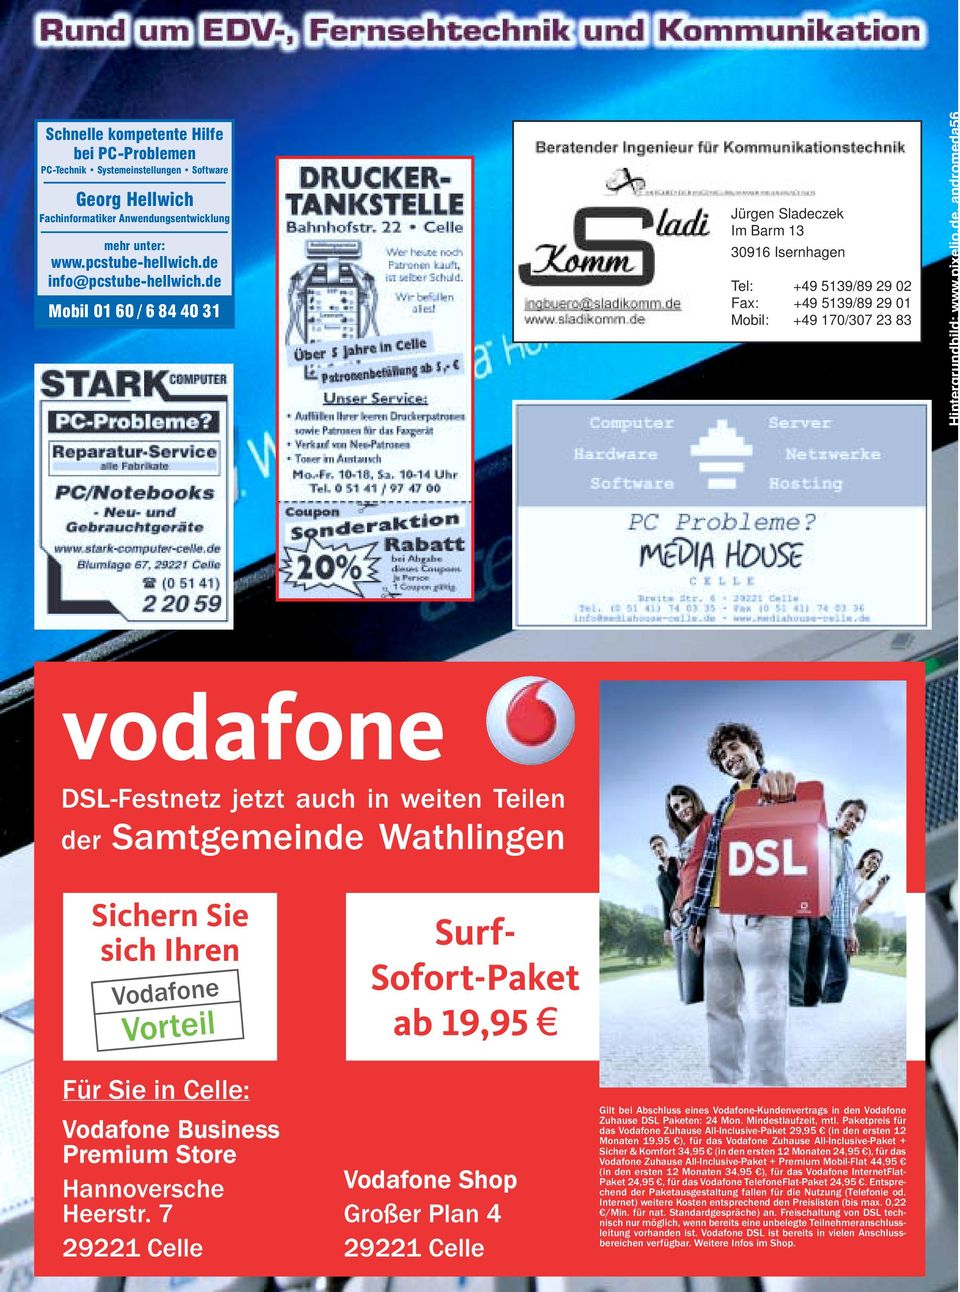 Samtgemeinde Wathlingen Sichern Sie sich Ihren Vodafone Vorteil Für Sie in Celle: Vodafone Business Premium Store Hannoversche Heerstr.